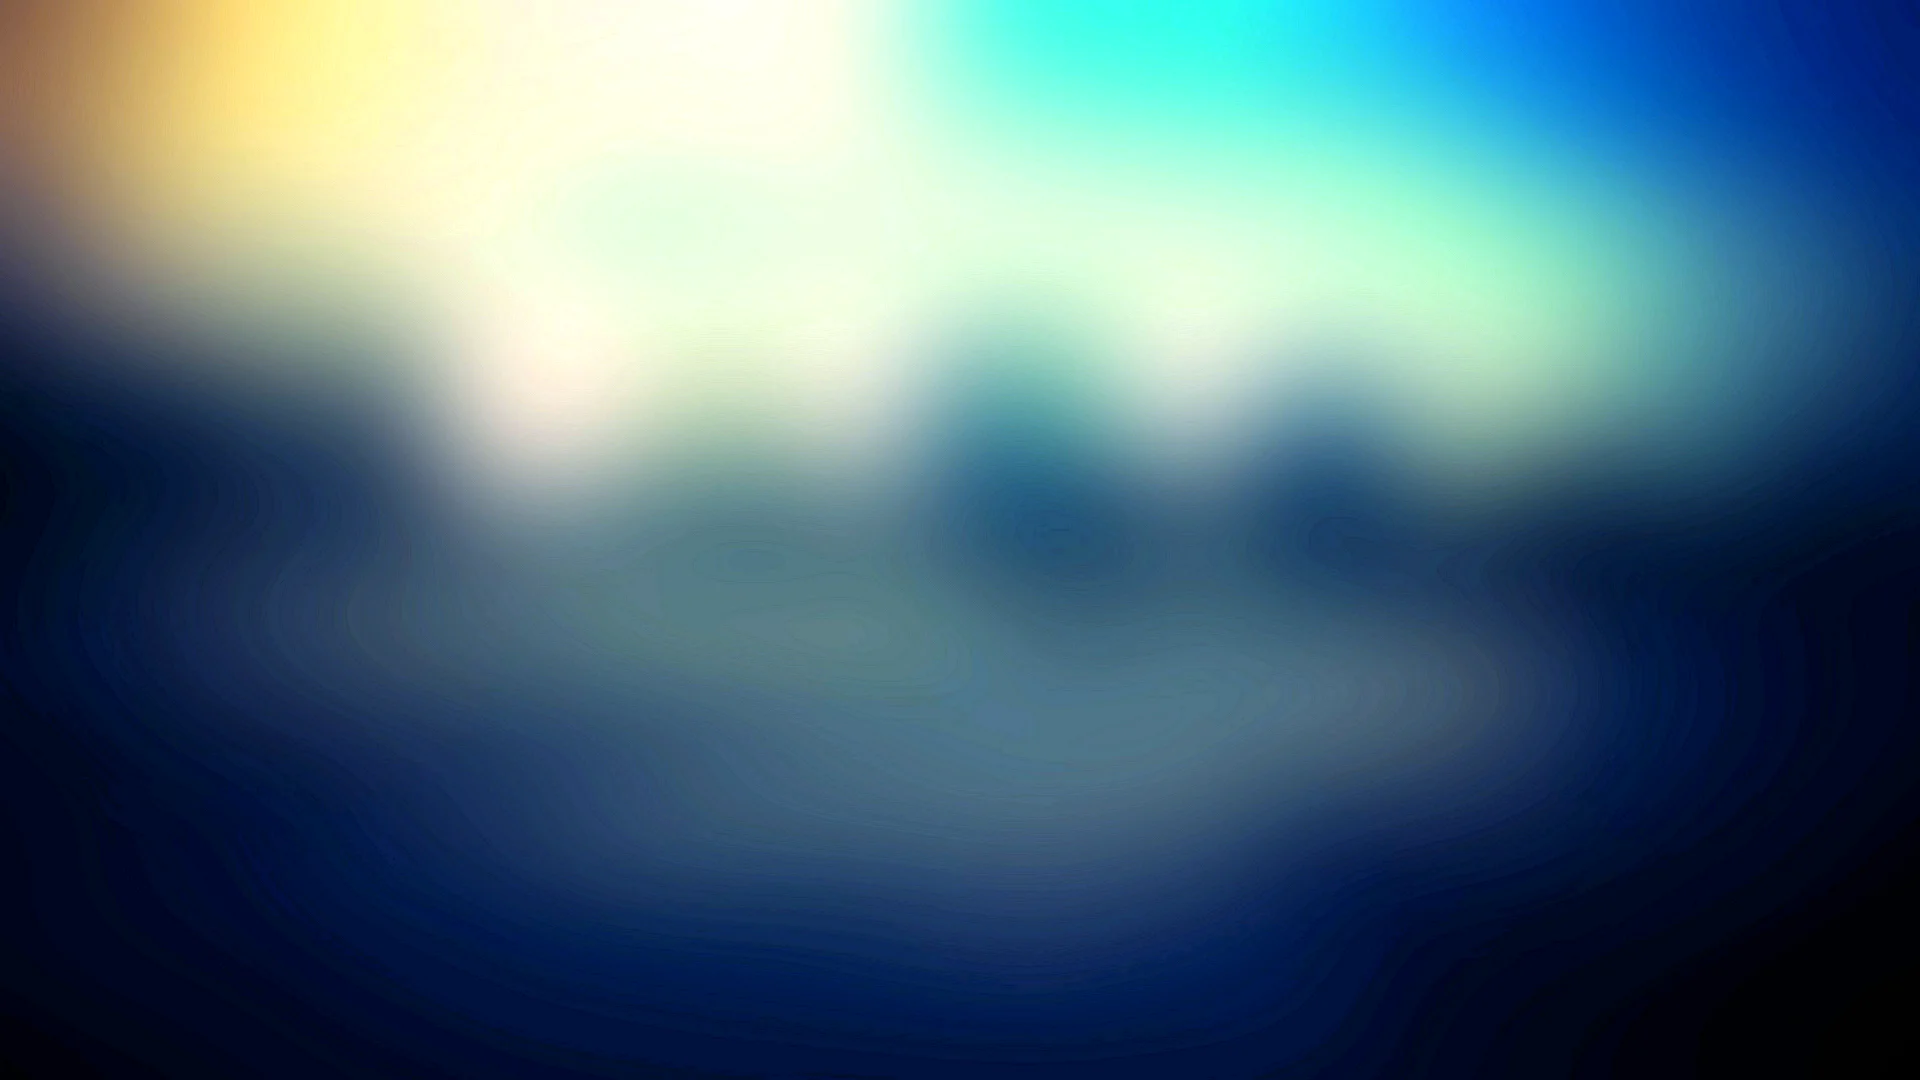 Blur background Wallpaper